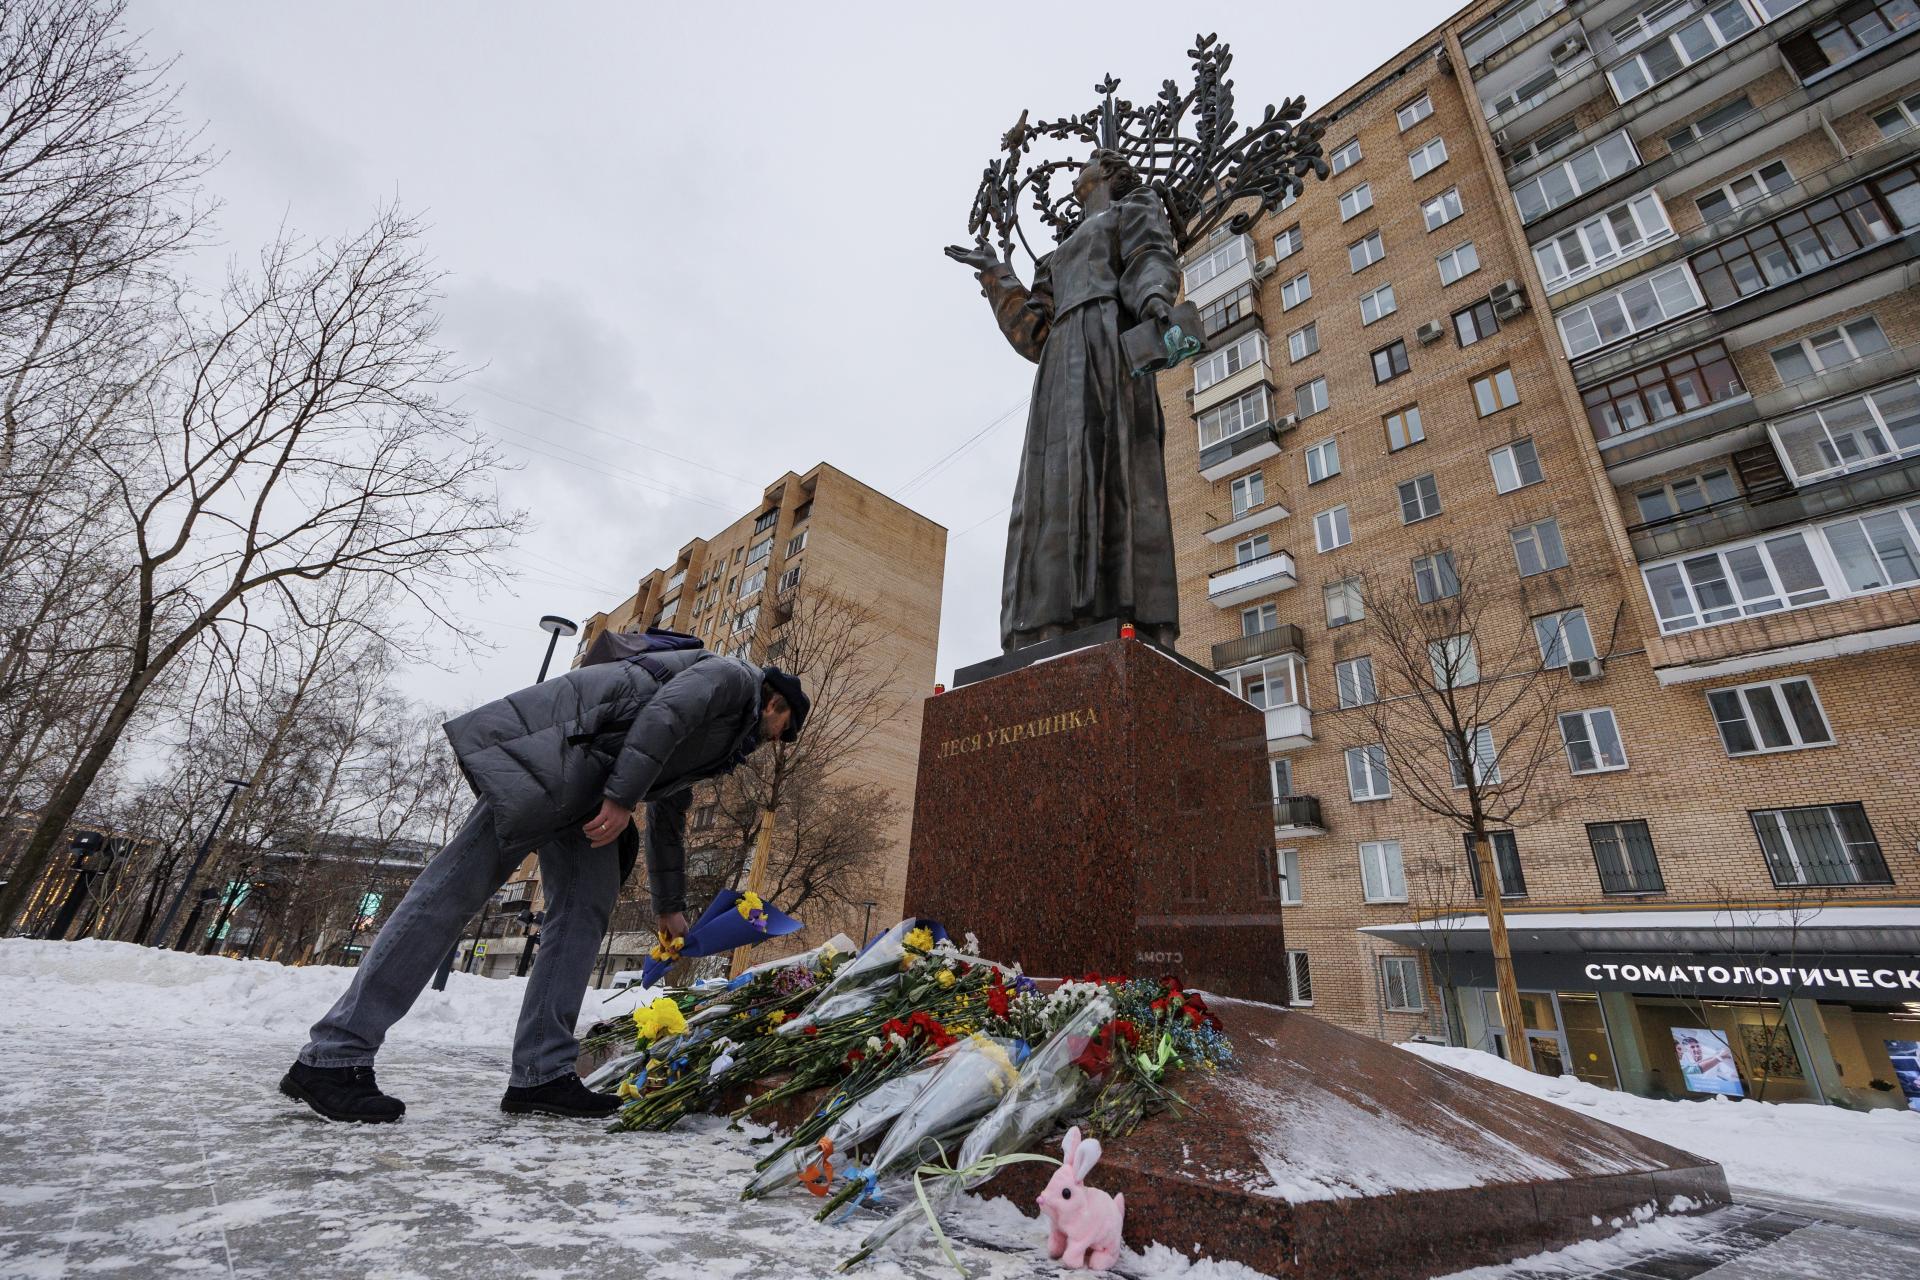 Rusi si pripomínajú výročie invázie na Ukrajinu kvetmi, polícia ich zatýka aj pod zámienkou koronavírusu